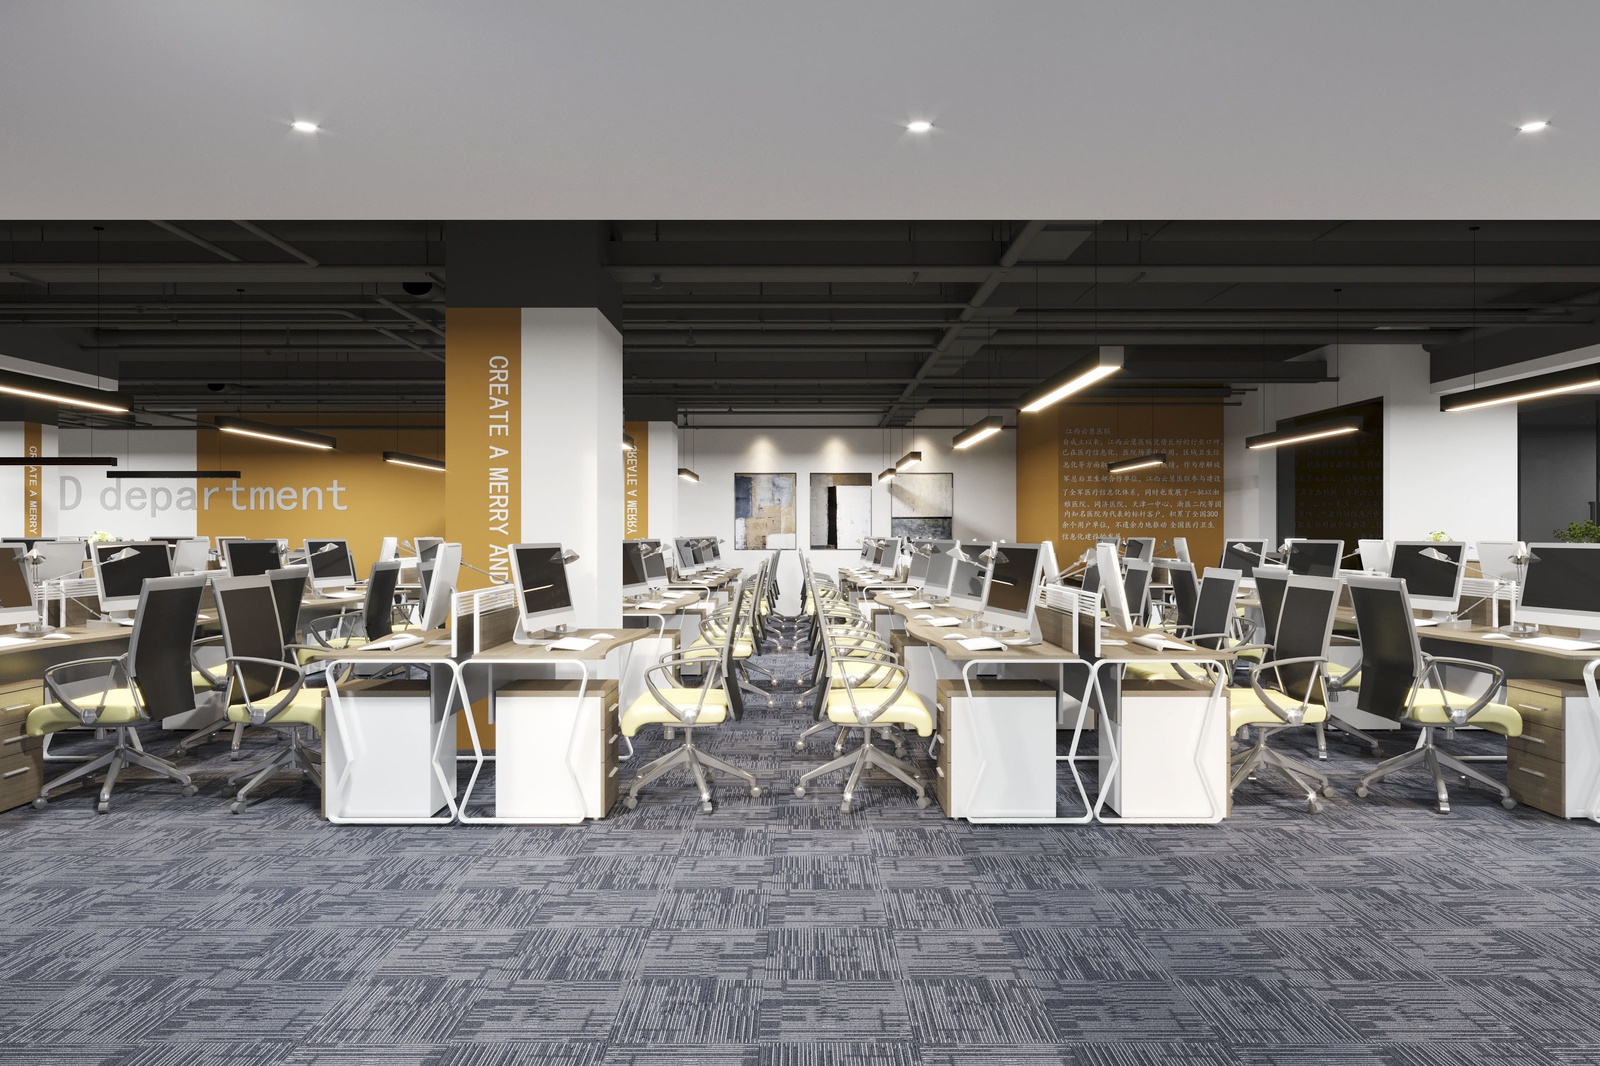 [Báo giá] Thiết kế thi công nội thất văn phòng cao cấp trọn gói tại Decox Design